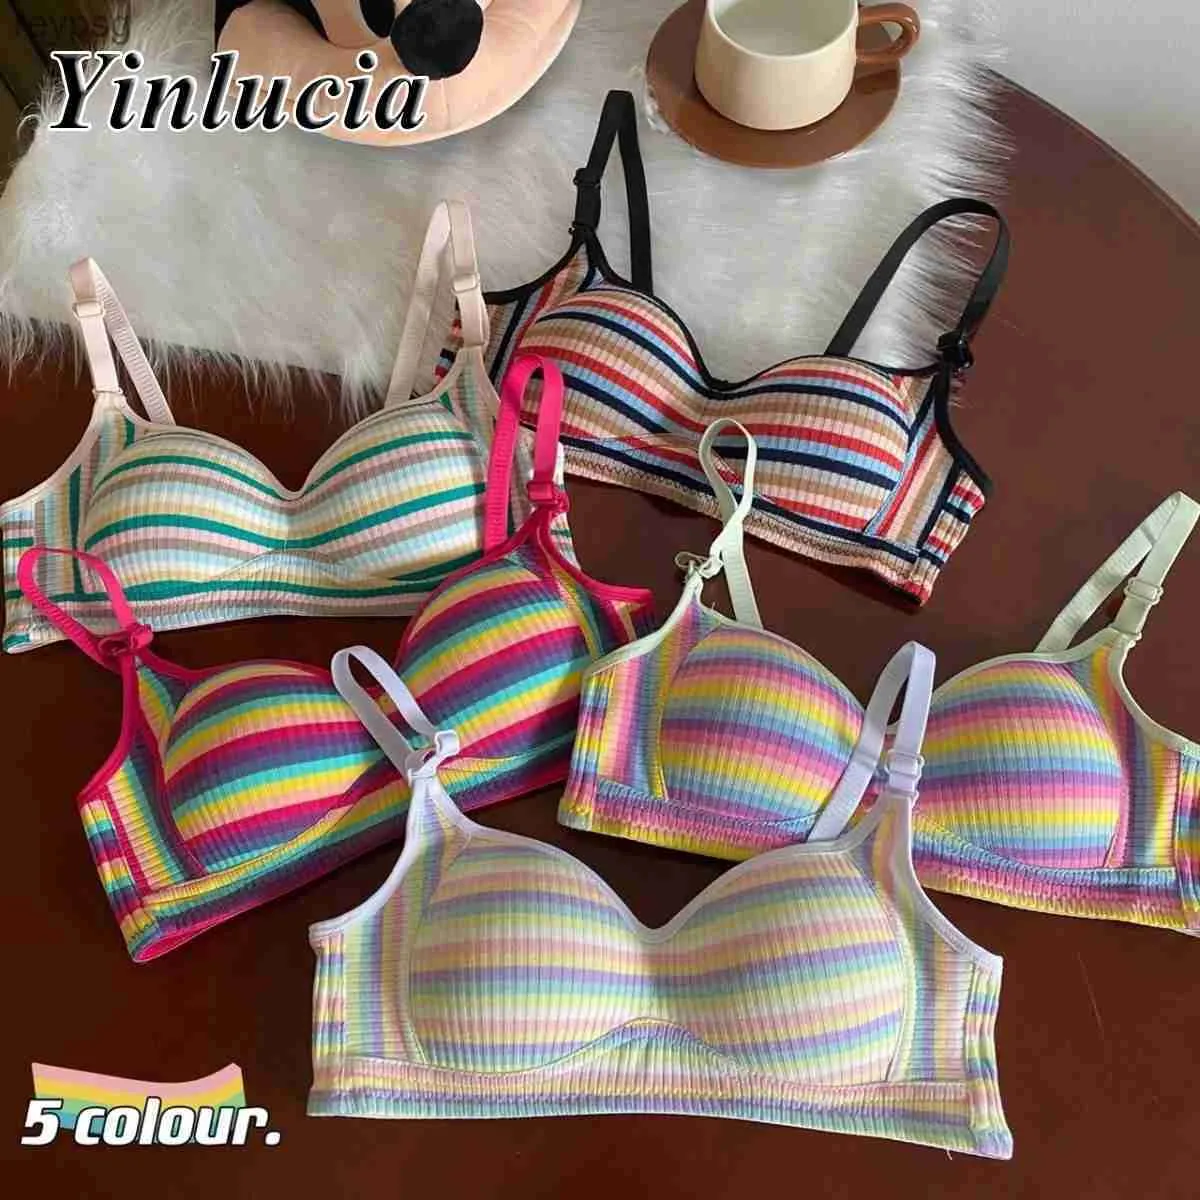 Bras Bras Lingerie Vintage Rainbow Stripes Bra Gathered Crop Top Underwear Push Up Bras New Summer Daily Soft Elastic Underwear Women YQ240203